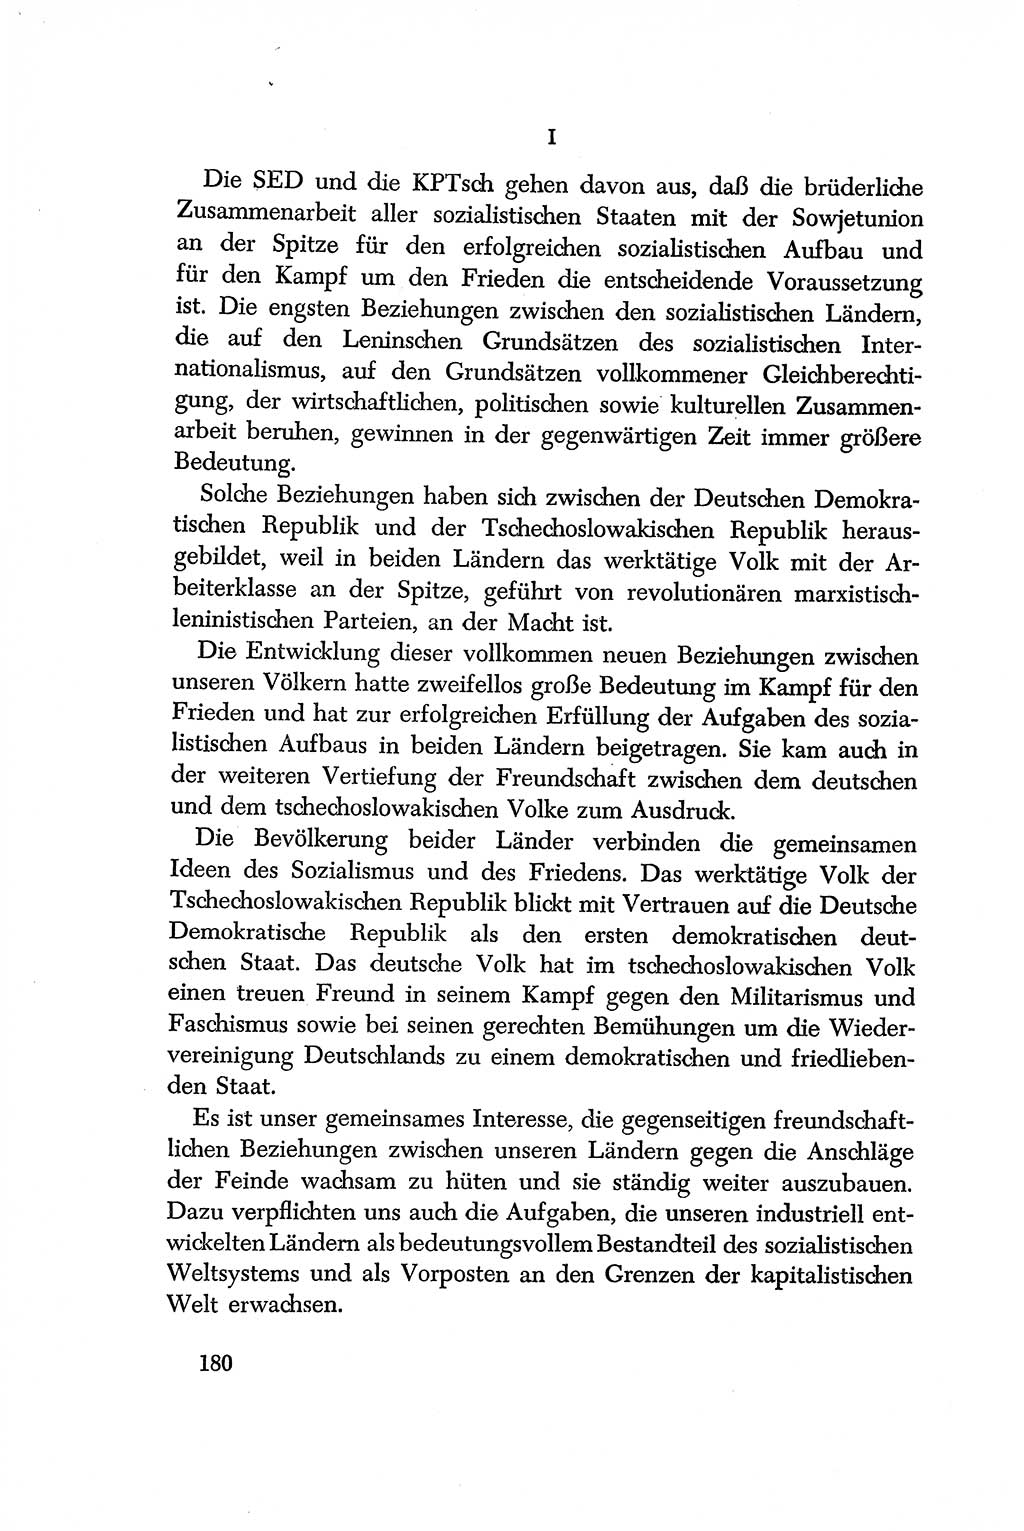 Dokumente der Sozialistischen Einheitspartei Deutschlands (SED) [Deutsche Demokratische Republik (DDR)] 1956-1957, Seite 180 (Dok. SED DDR 1956-1957, S. 180)